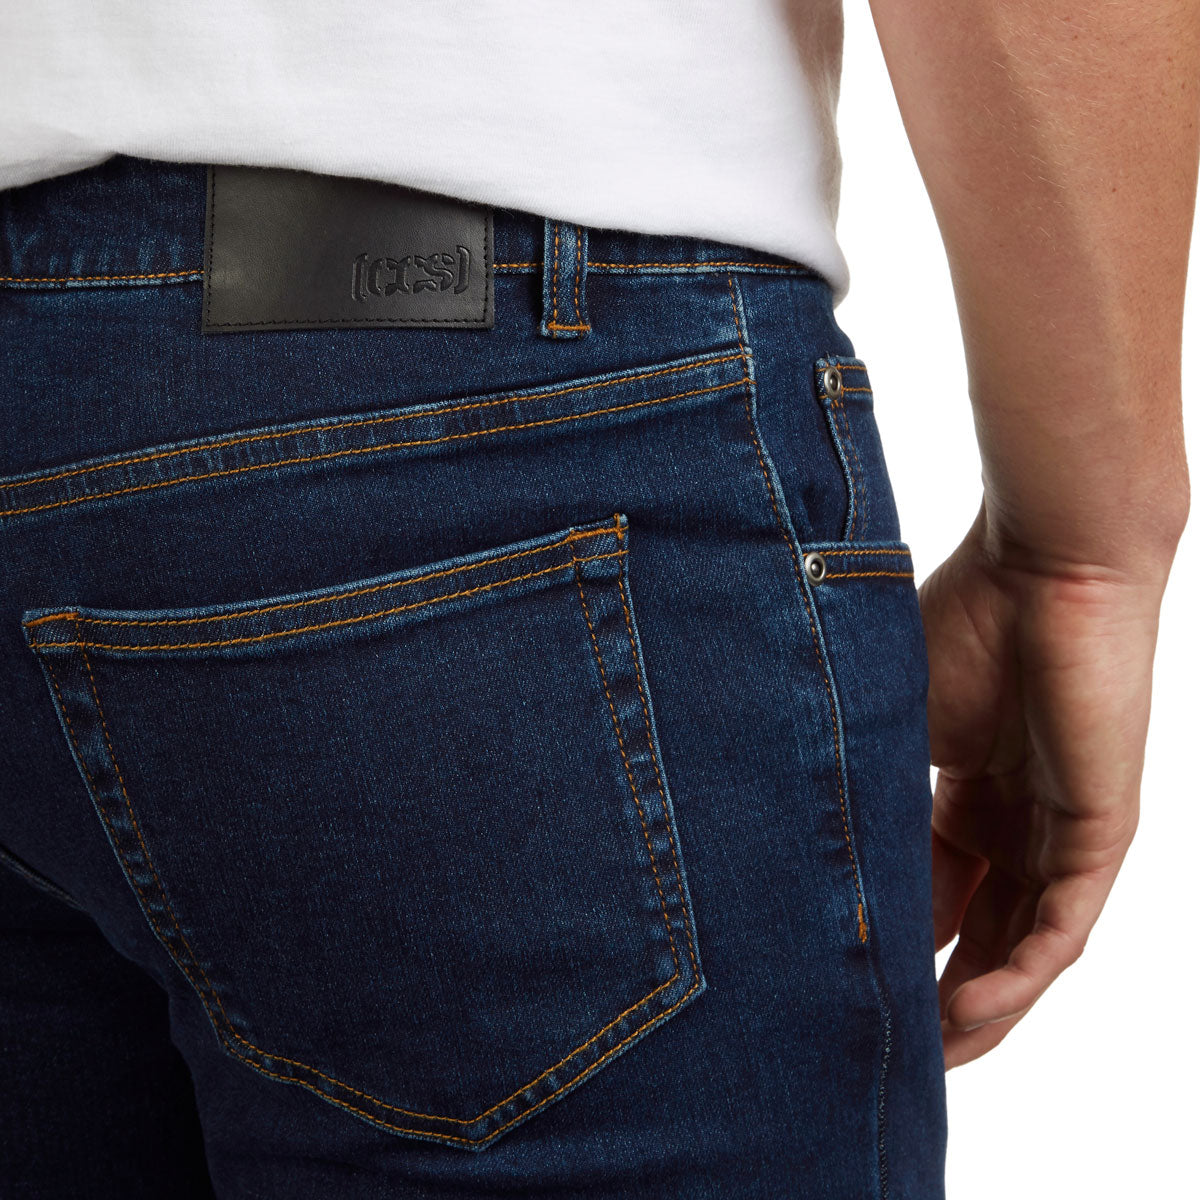 CCS Standard Plus Slim Denim Jeans - Indigo image 5